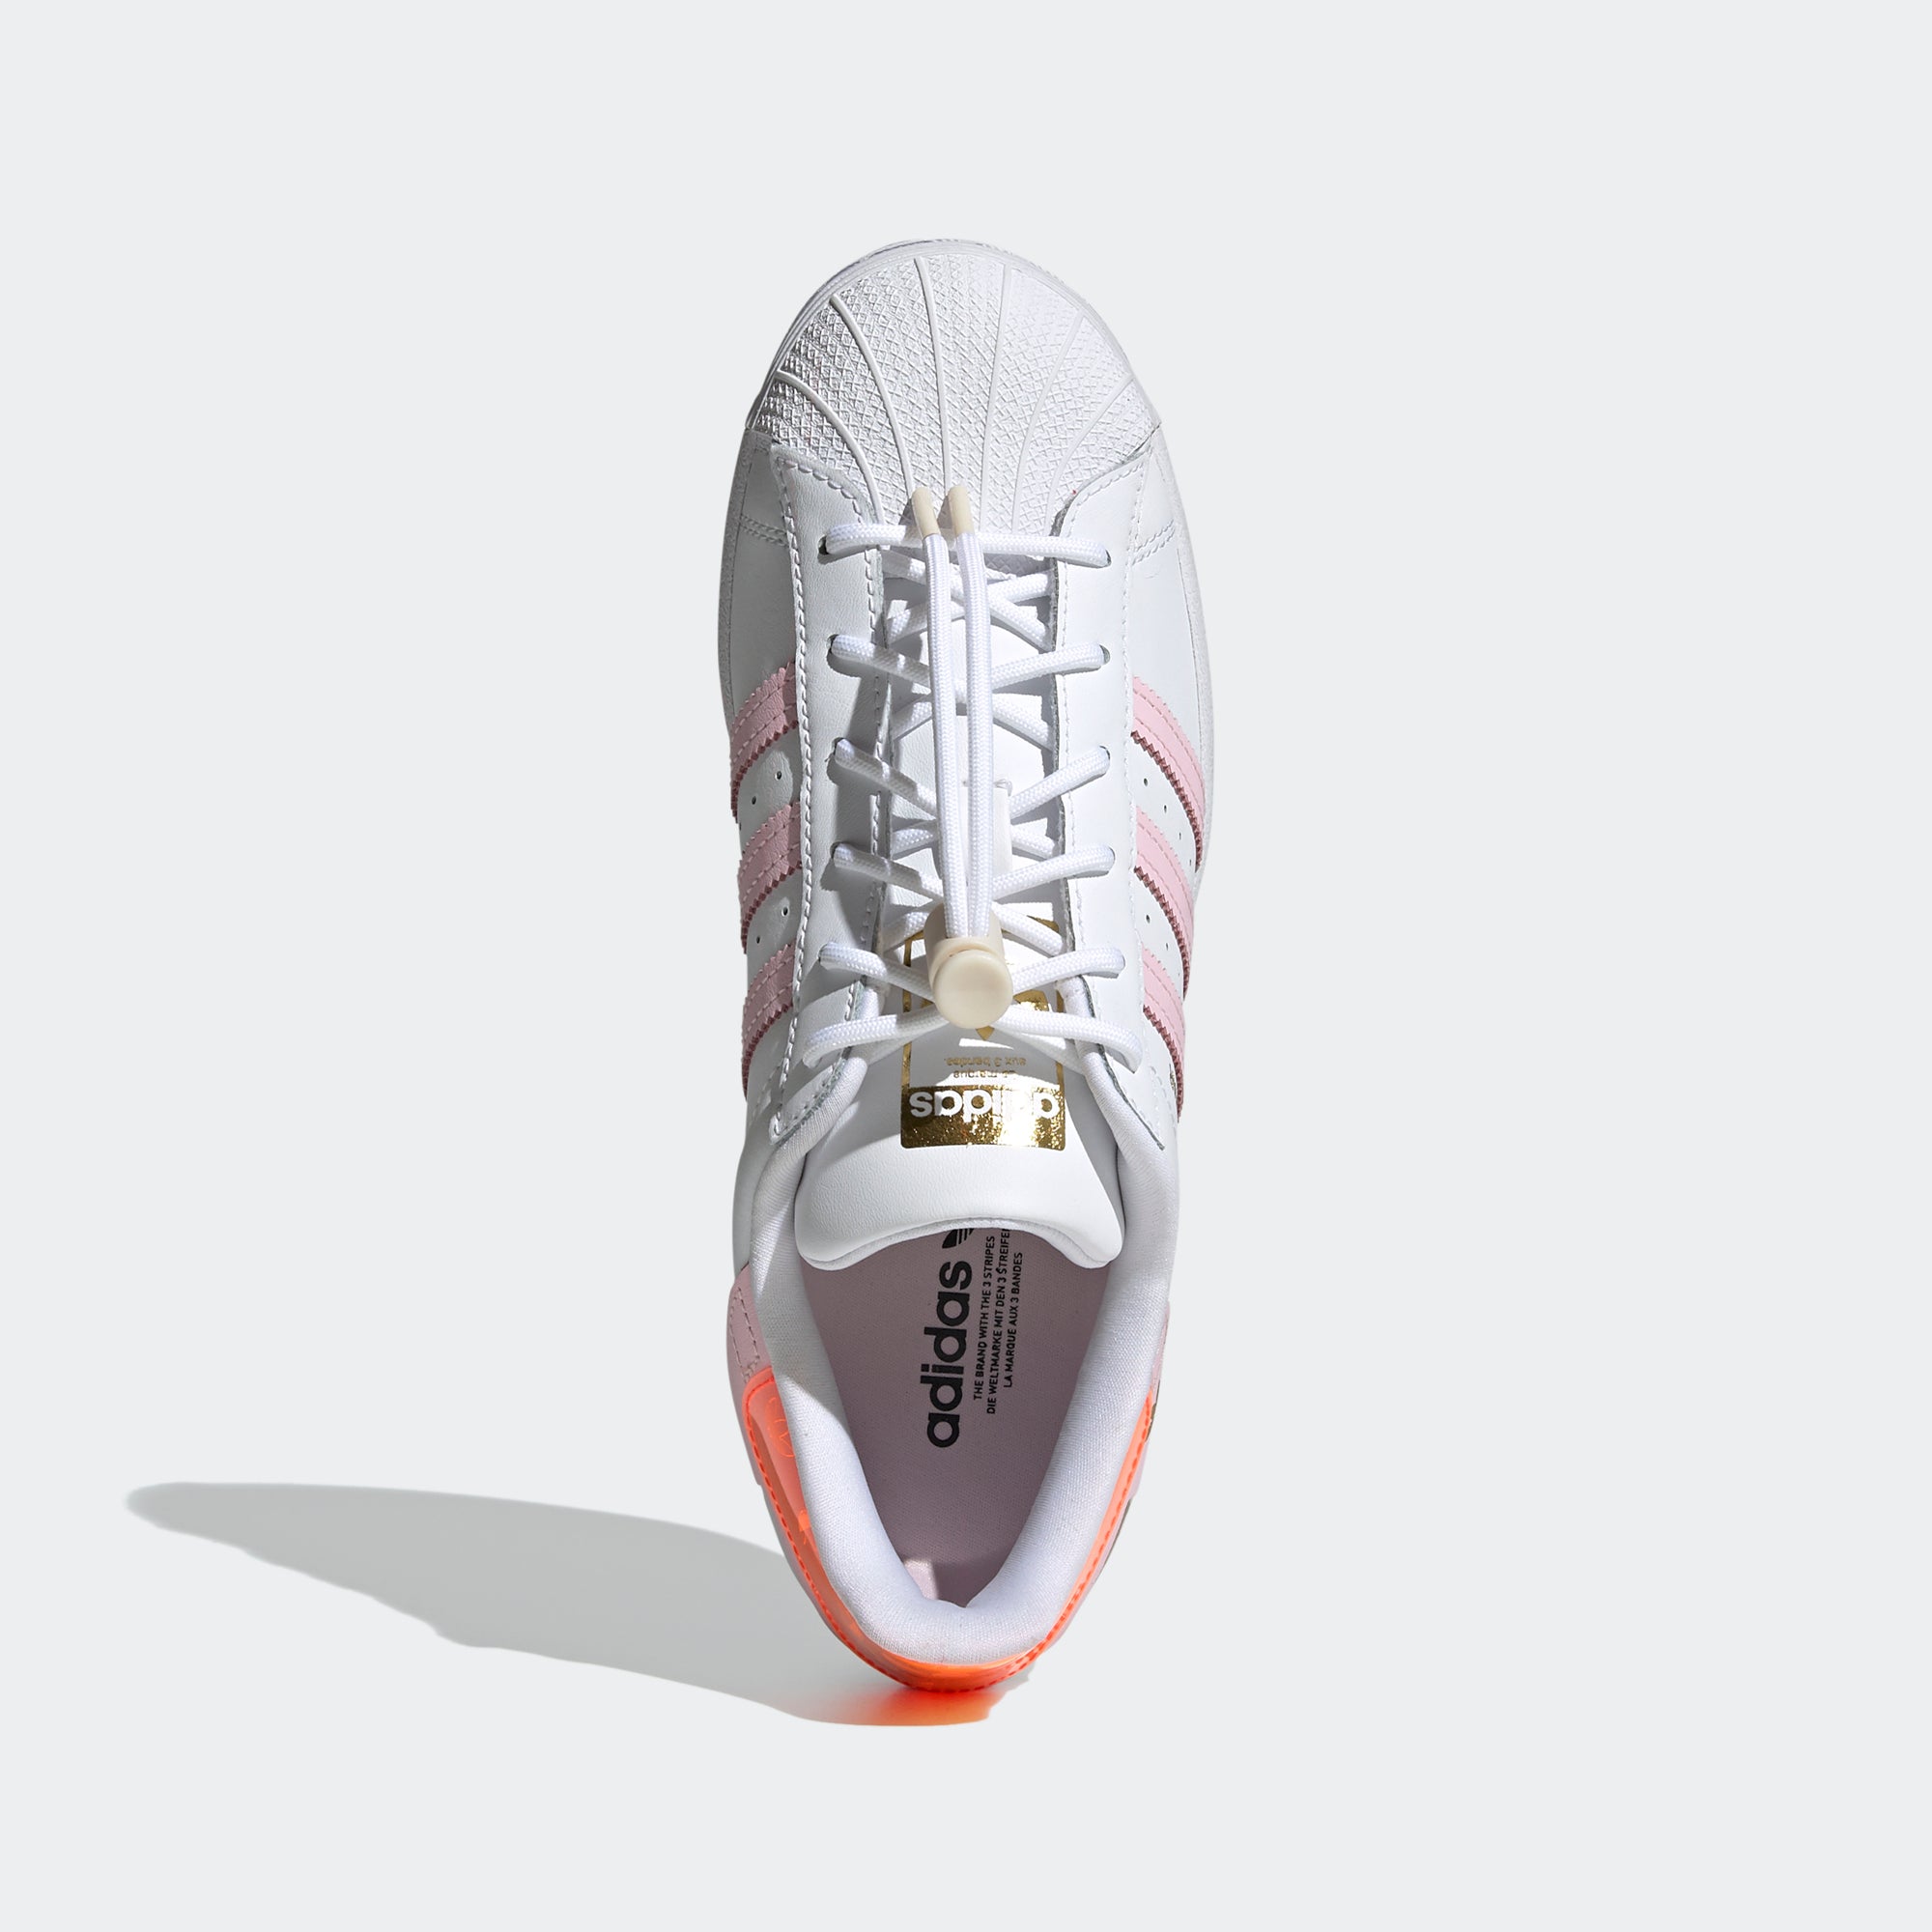 adidas Superstar Shell Toe Sneaker Shoes White Velvet Red Leather Women 5.5